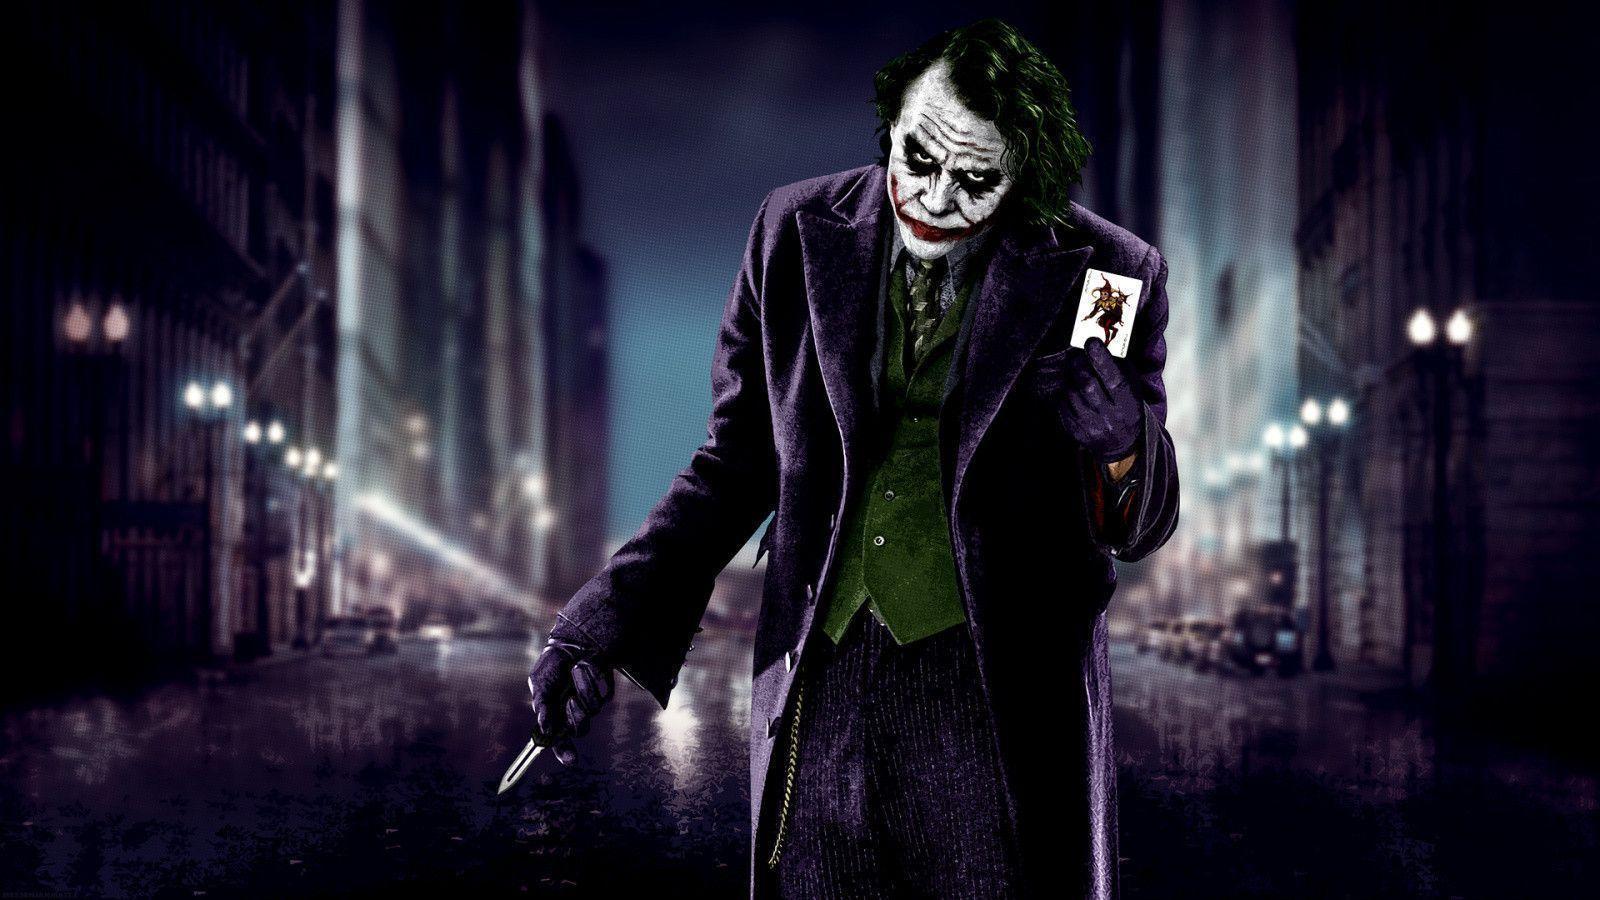 The Dark Knight Joker Wallpapers